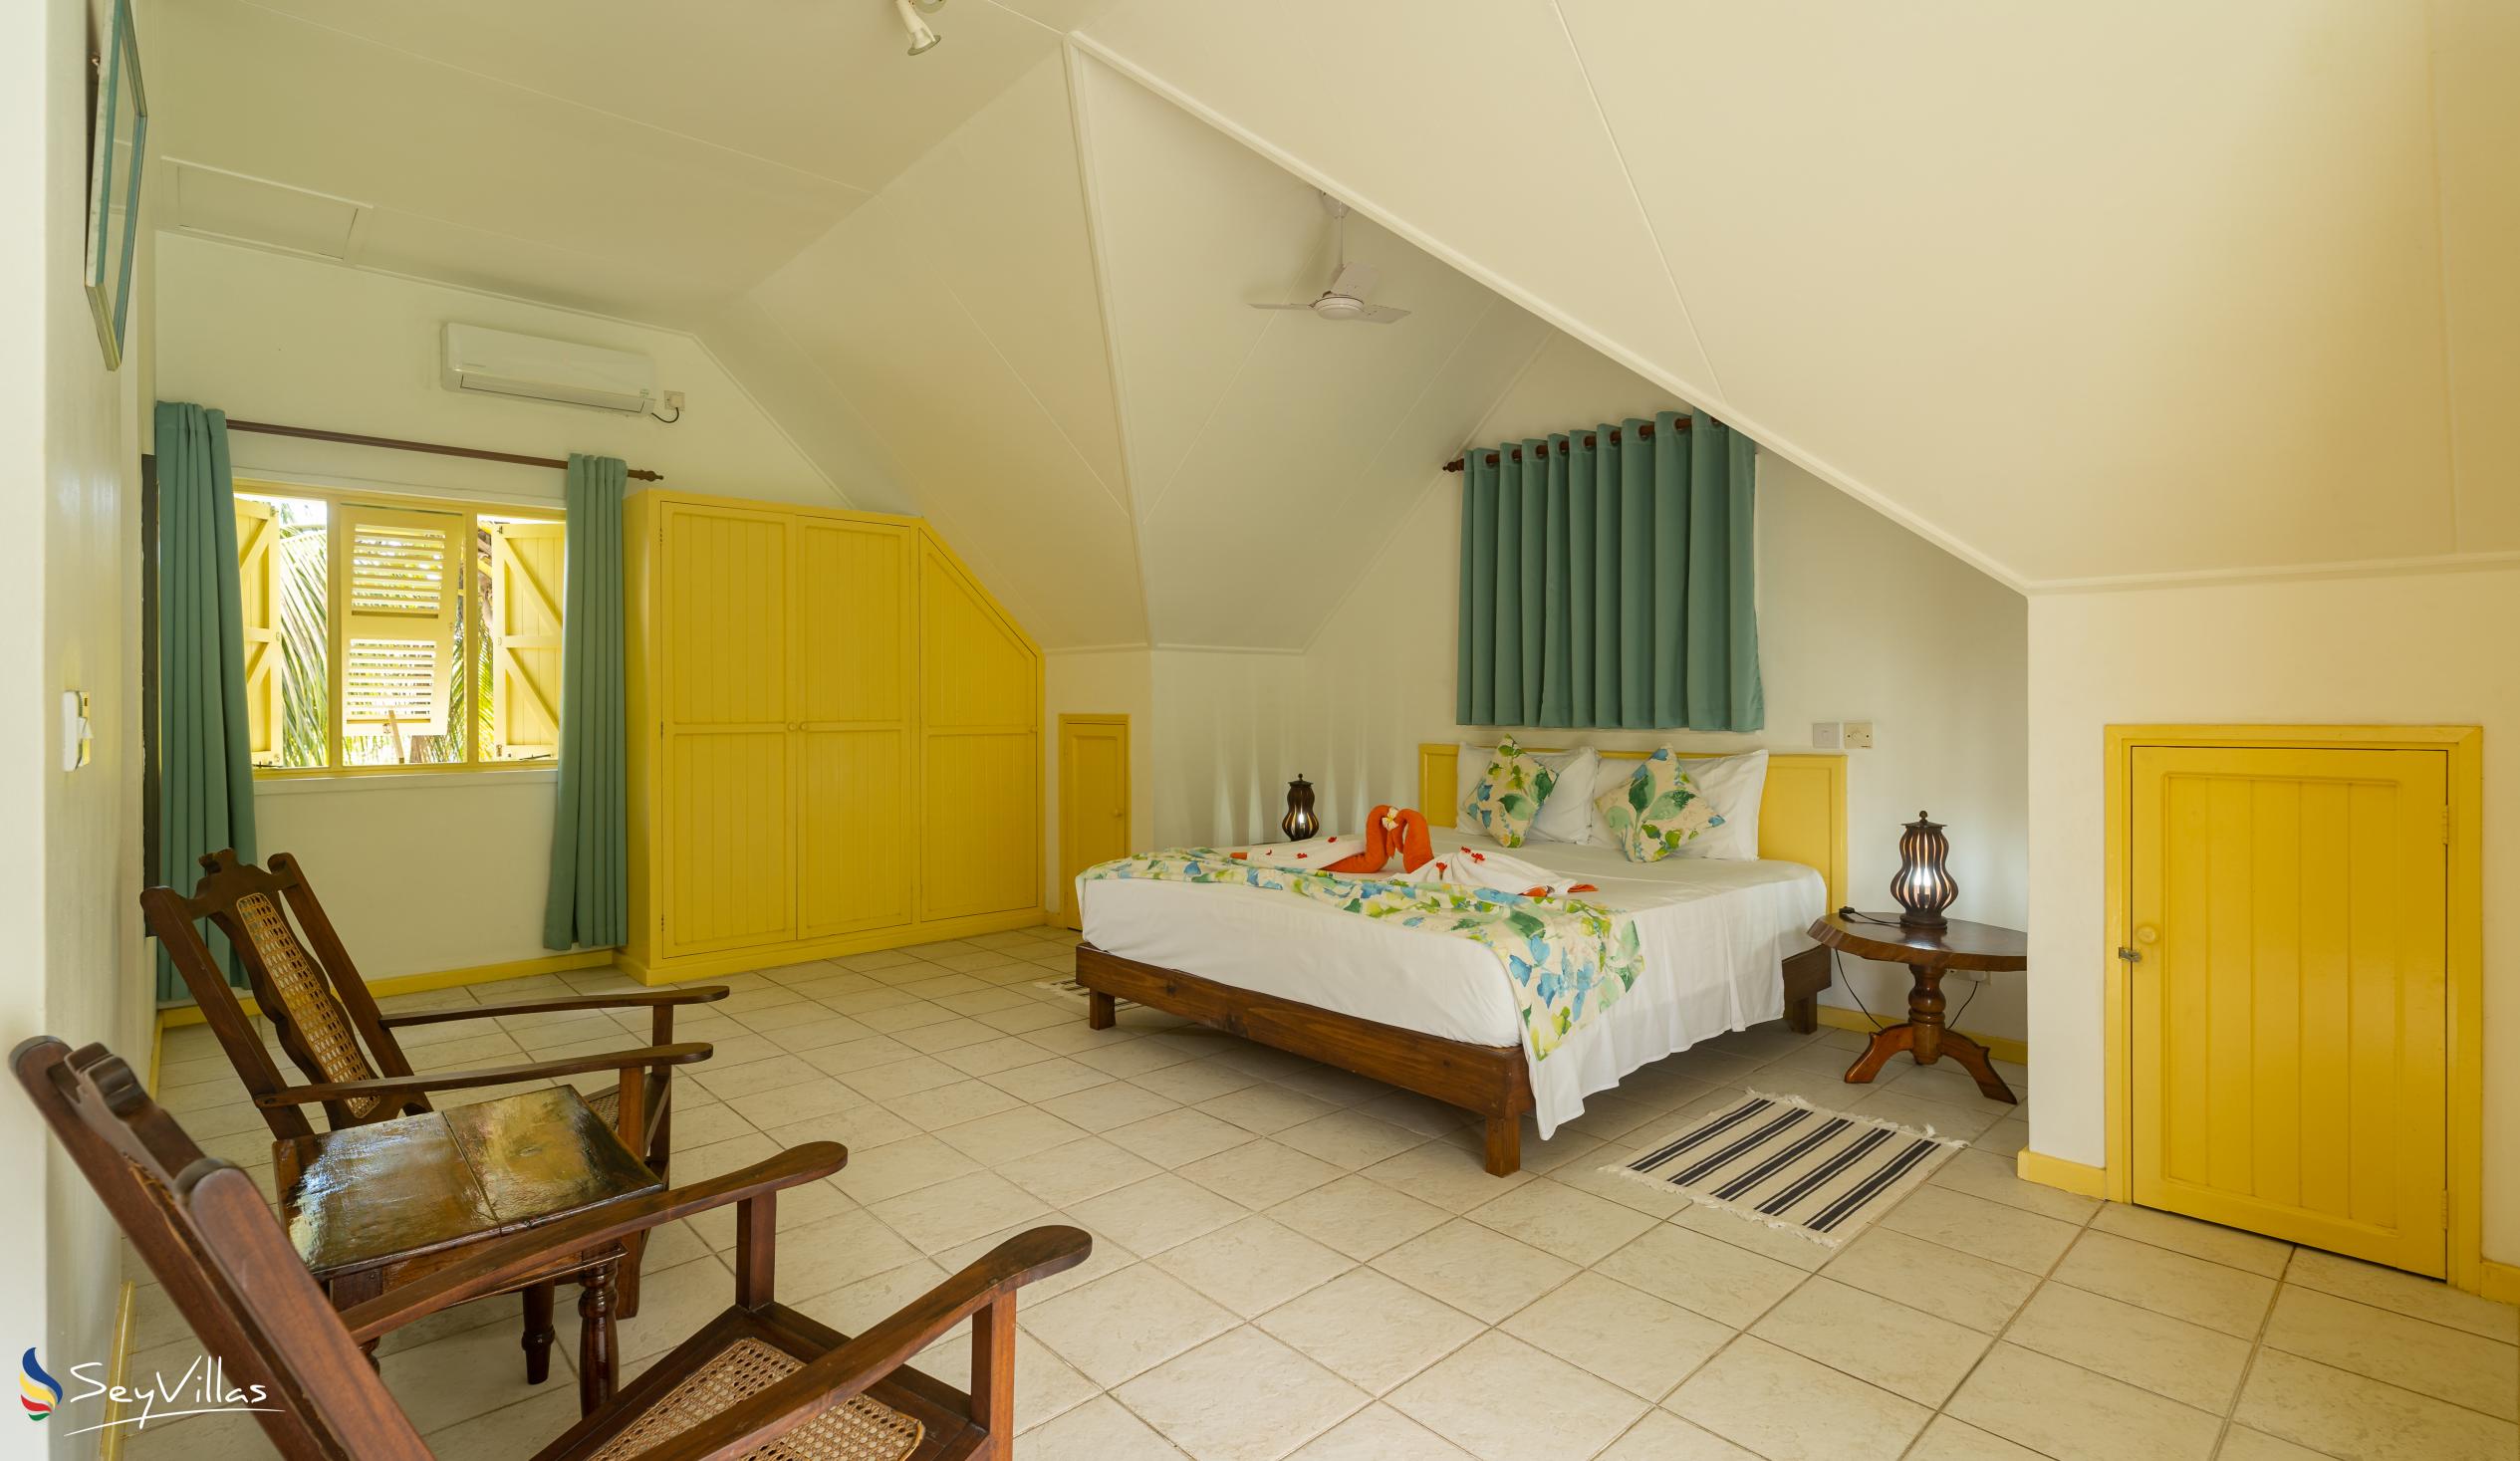 Foto 23: Villa Kordia - Villa 3 Chambres - Mahé (Seychelles)